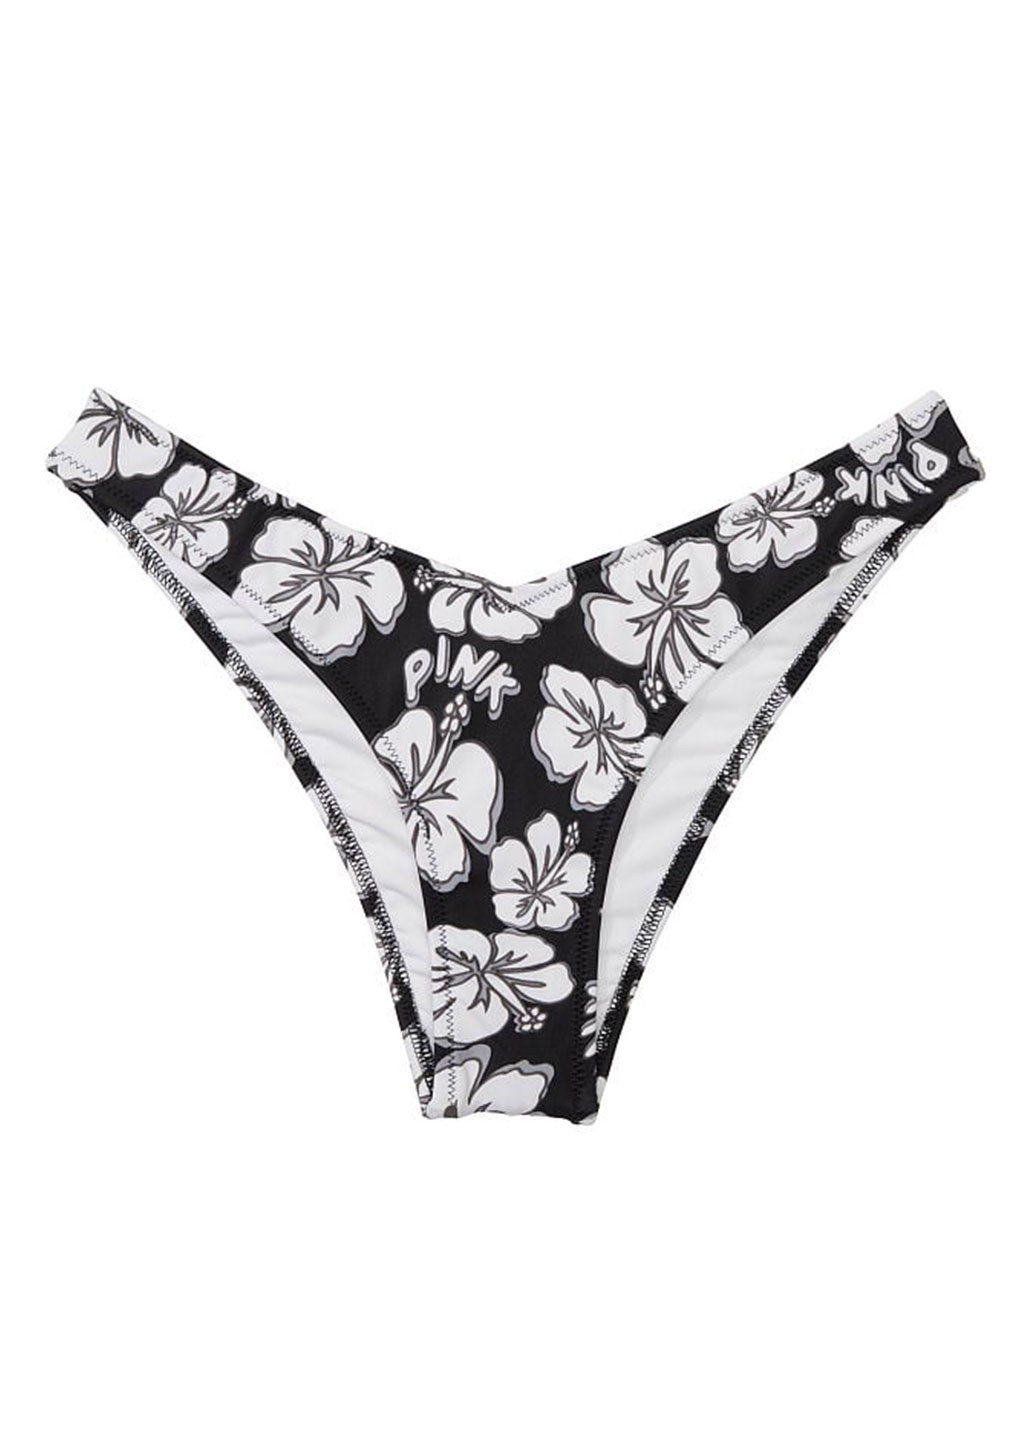 Черно-белый демисезонный купальник (лиф, трусики) раздельный, халтер Victoria's Secret